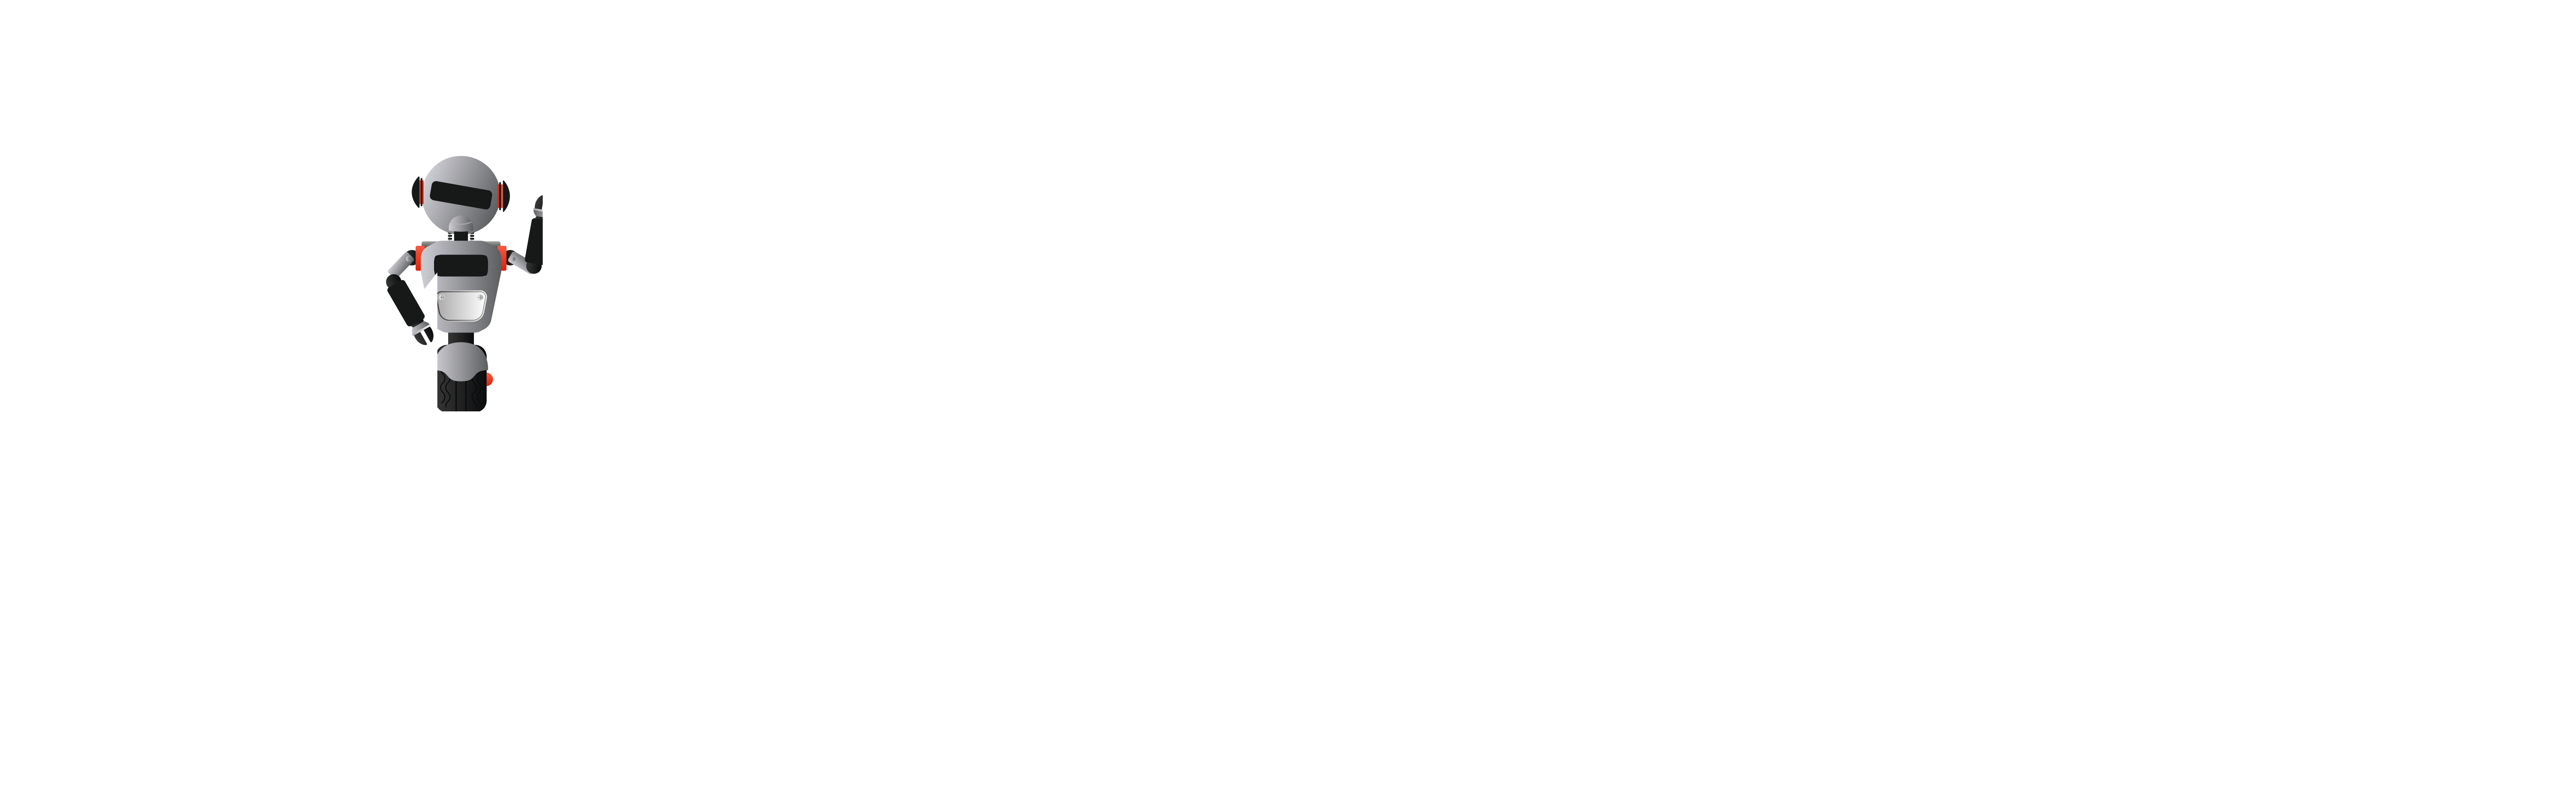 MetroRide White Logo